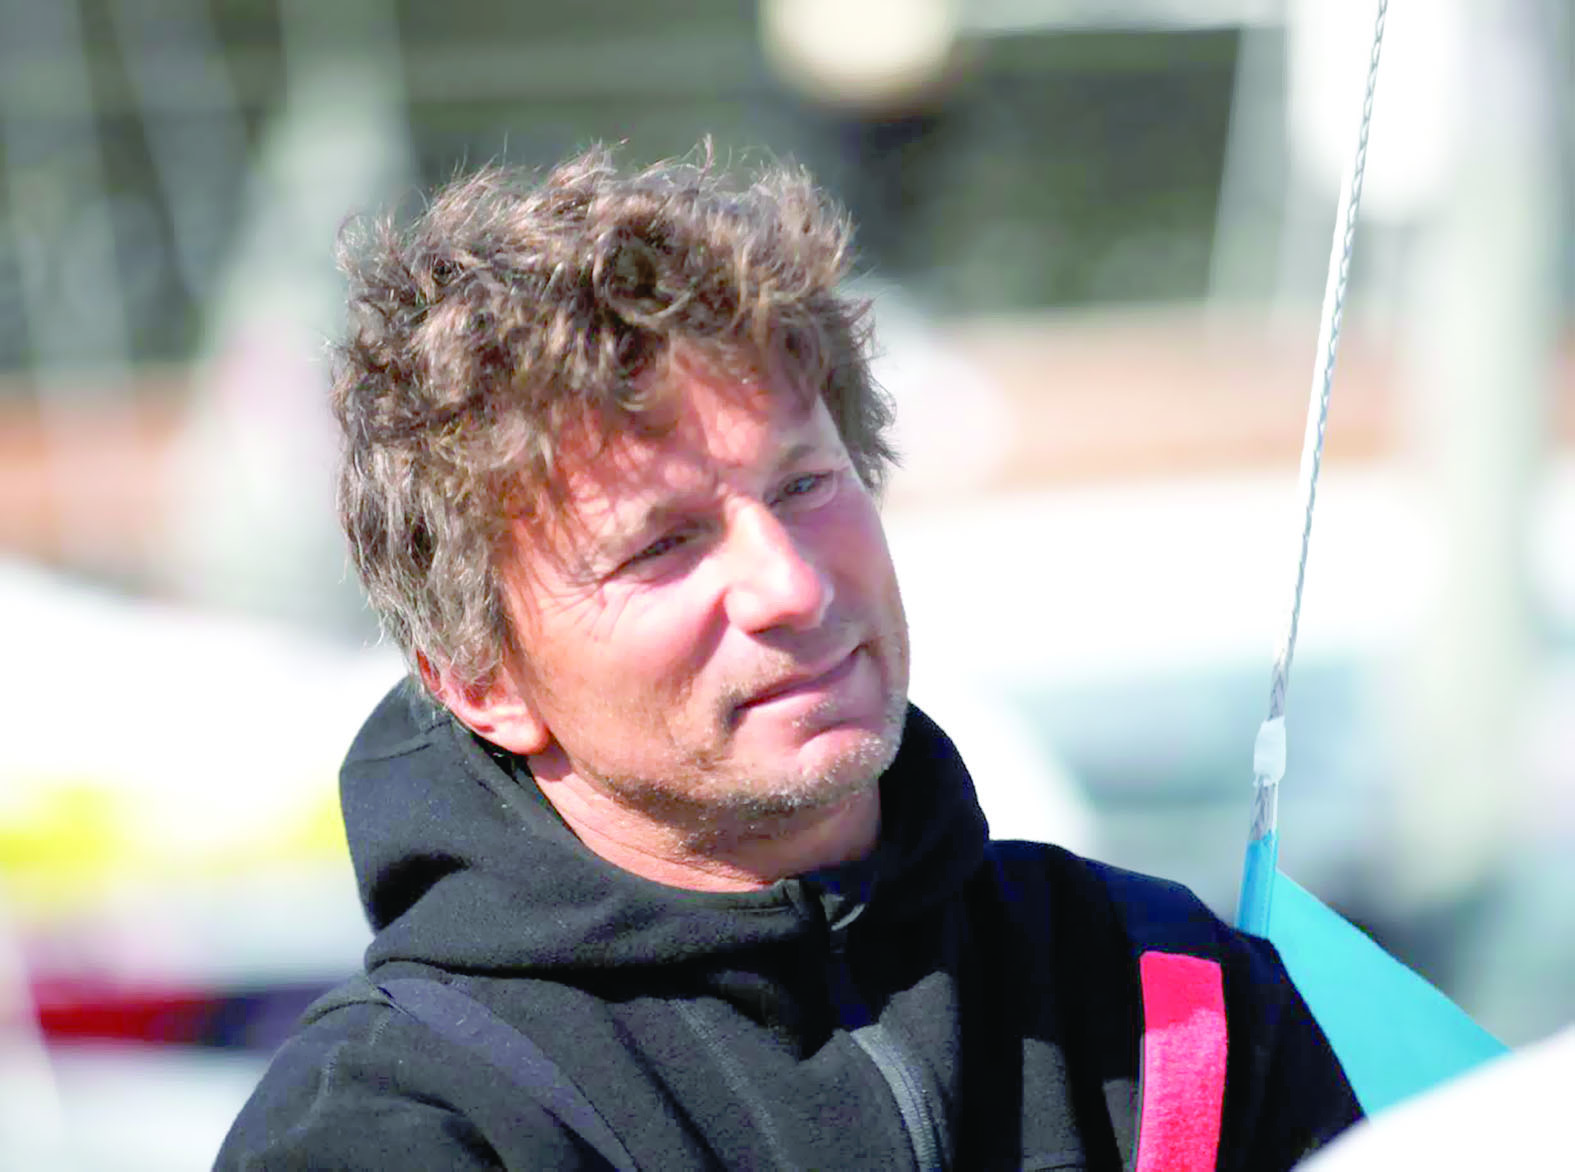 استعداداً للتحدي الأكبر في سباق الطواف الفرنسي

فرق عُمان للإبحار تتأهب للتحدي الجديد في سباق جراند بريكس إيكول نافال